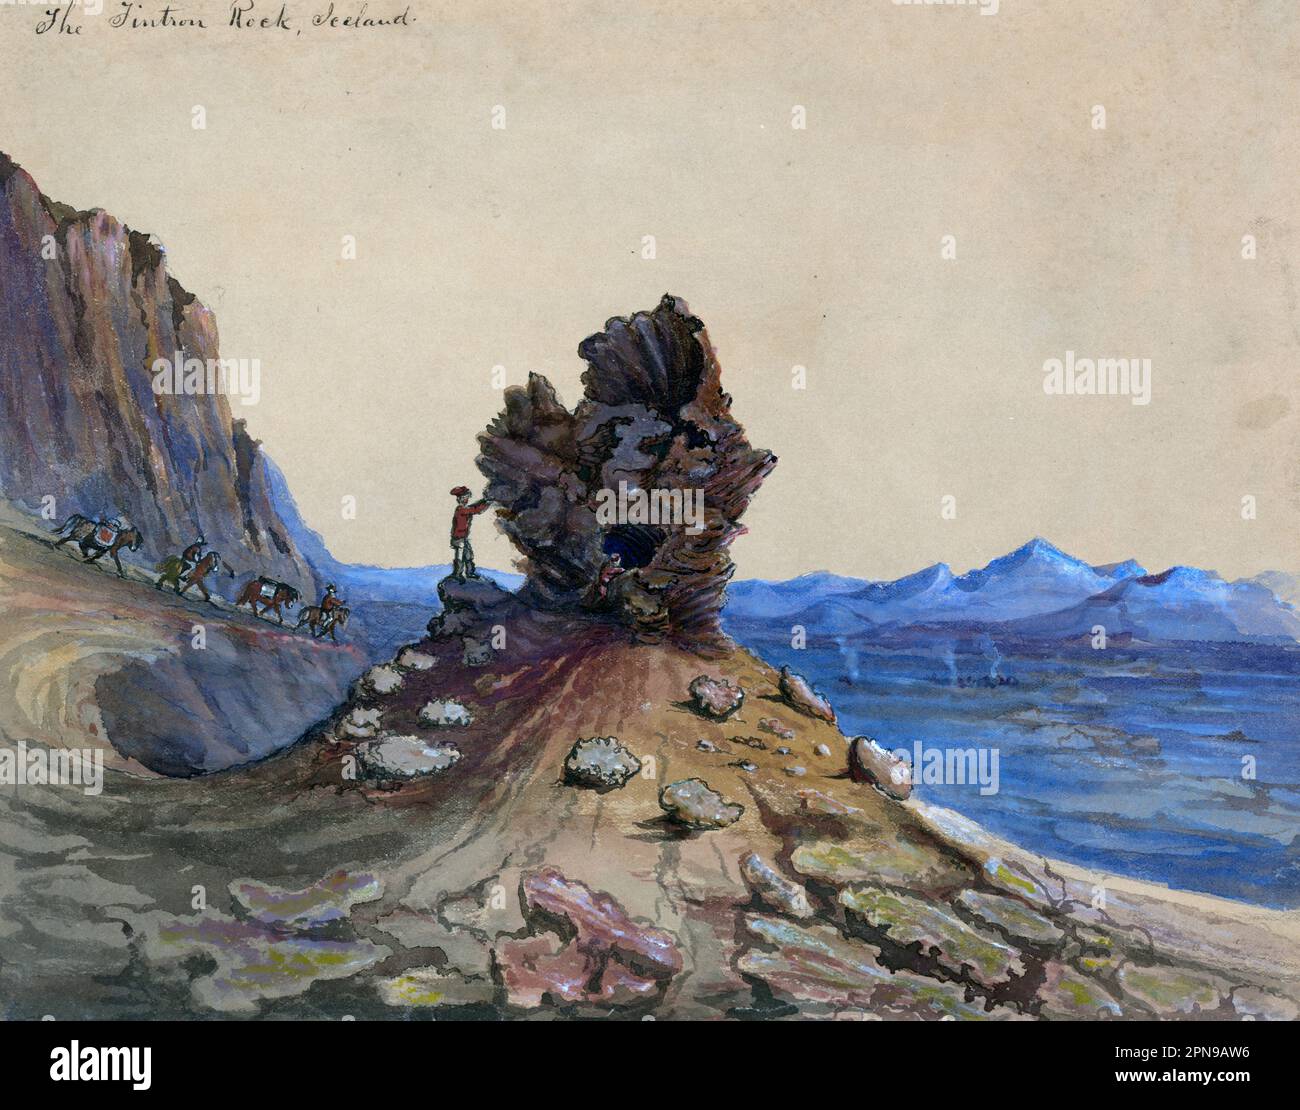 Tintron Rock, Islanda - disegno mostra i turisti in piedi e toccare una roccia in Islanda, mentre altri uomini cavalcano a cavallo. Taylor visitò l'Islanda nel 1862, forse in viaggio verso la Russia Foto Stock